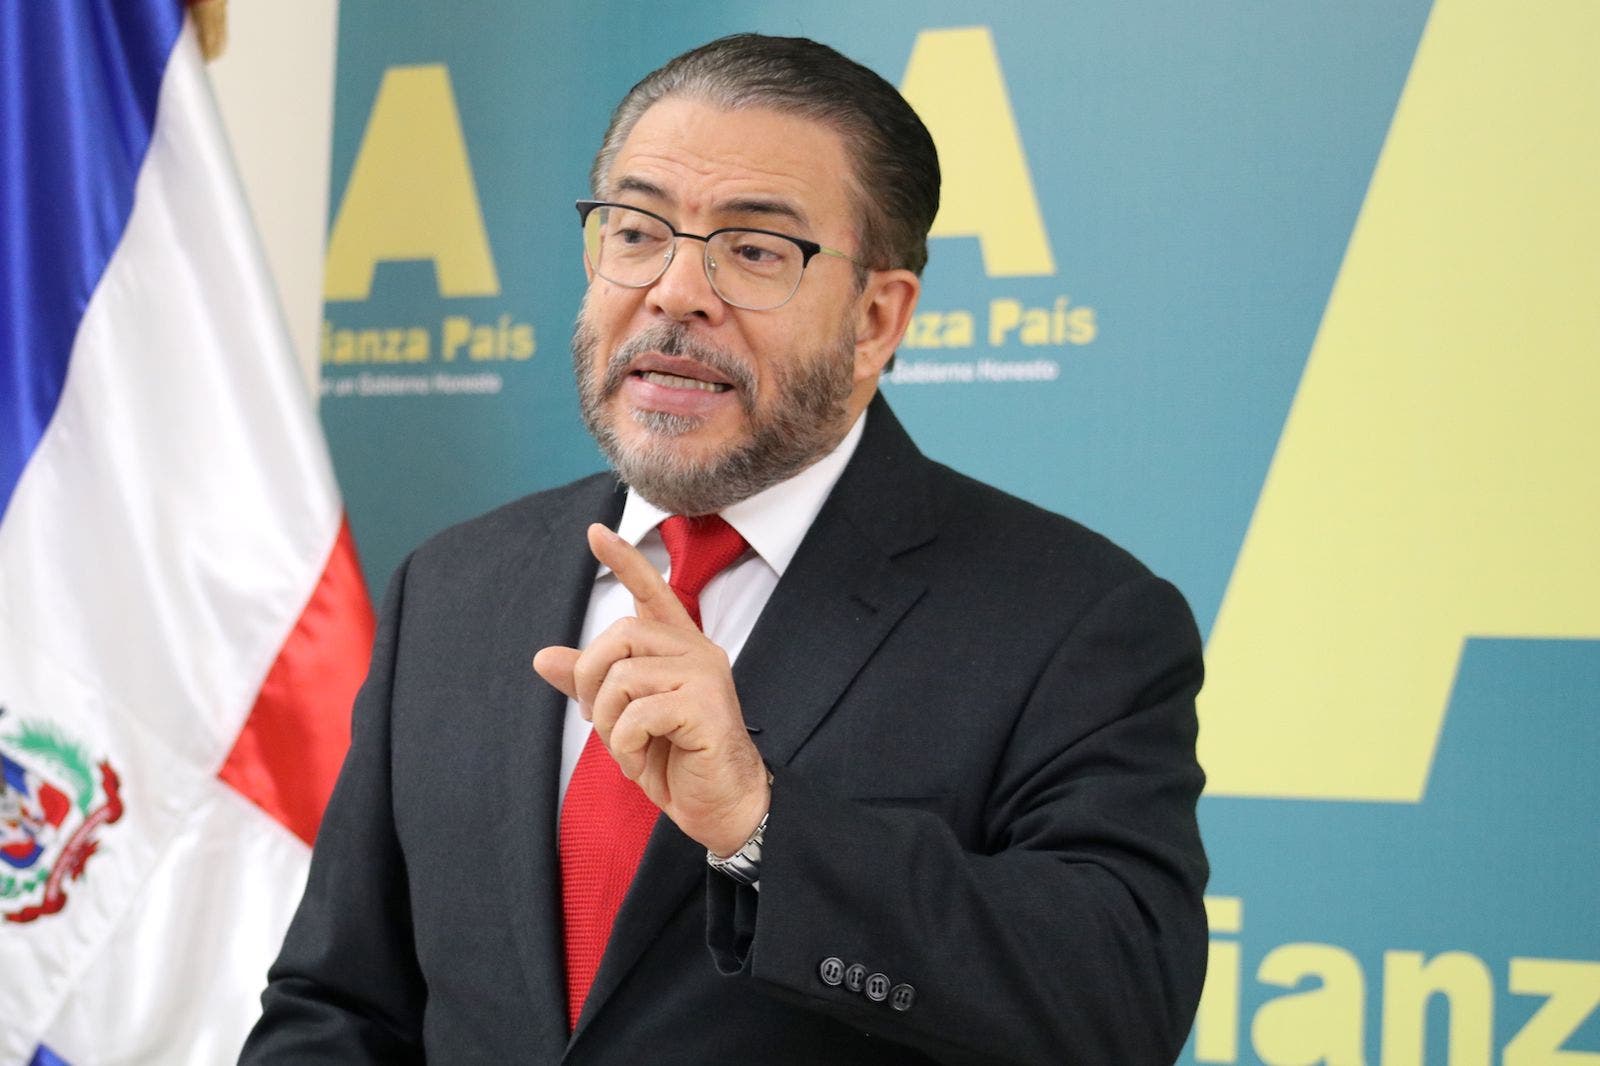 Dirección de Alianza País aprueba precandidatura de Guillermo Moreno